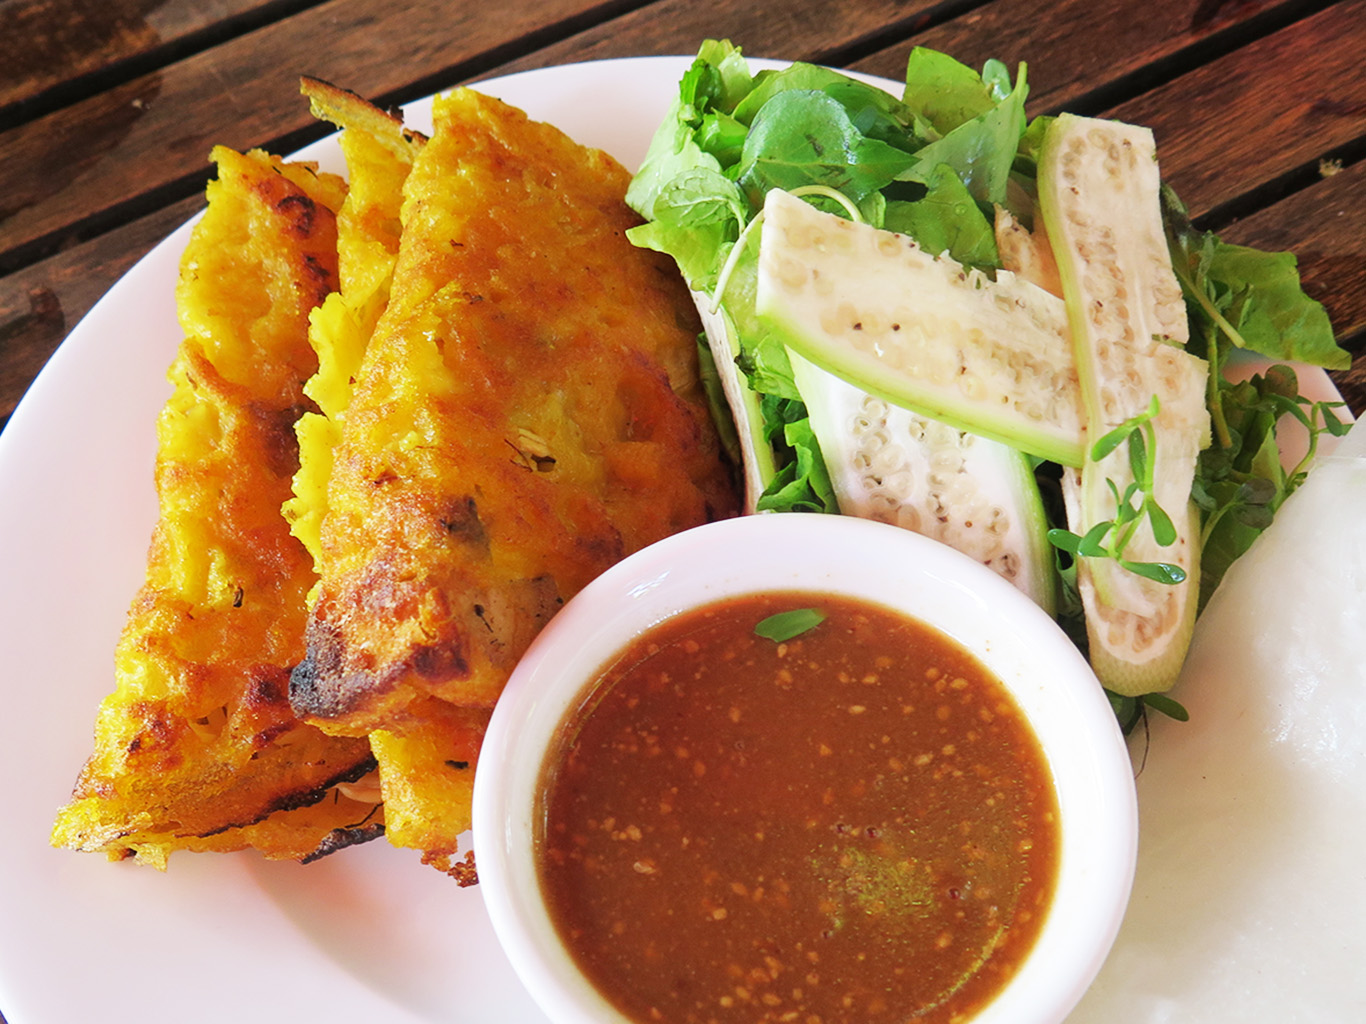 Placičky banh khoai jsou specialitou města Hue